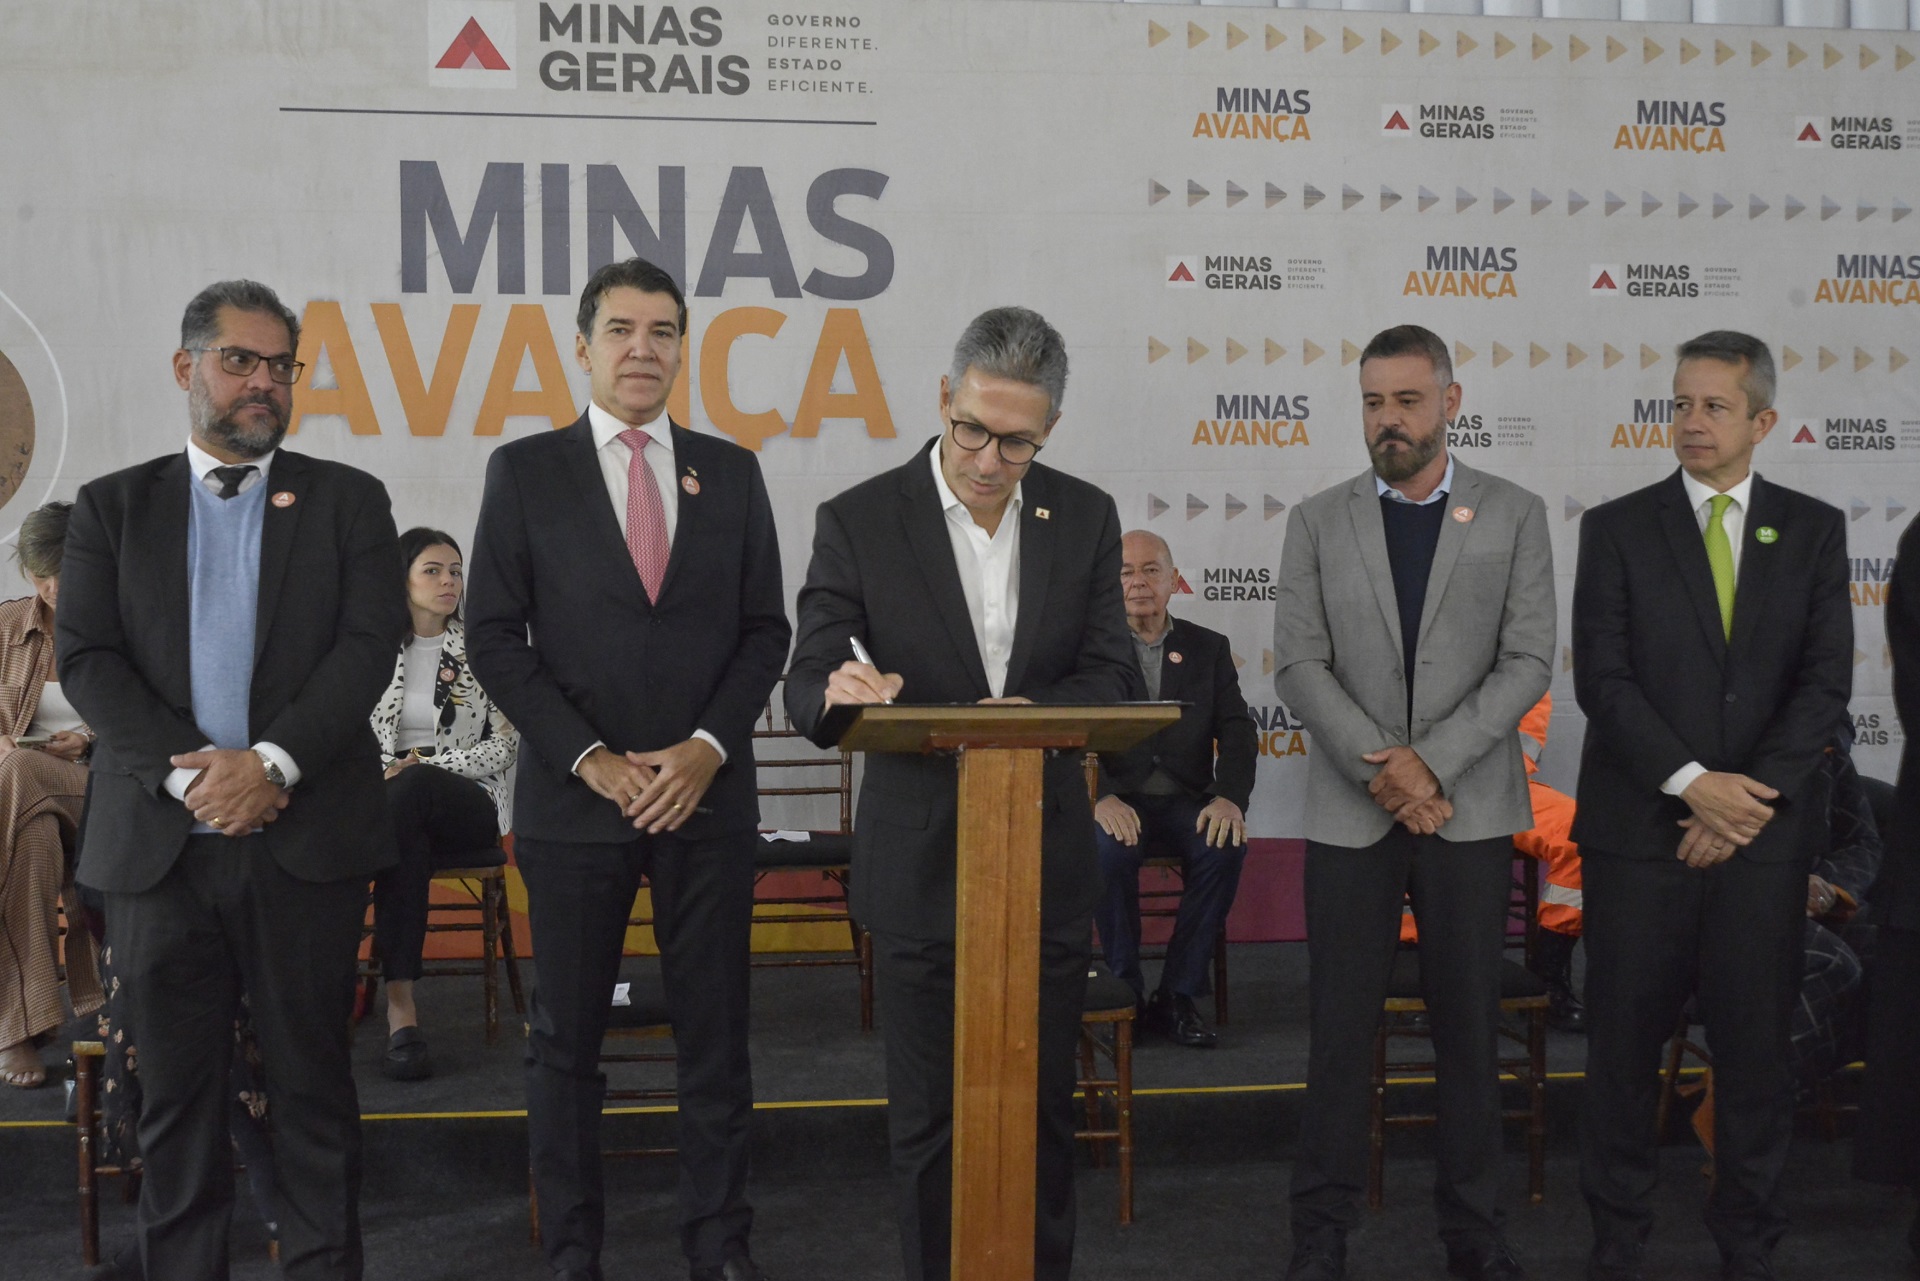 Governo de Minas assina compromisso restauração palácio da liberdade